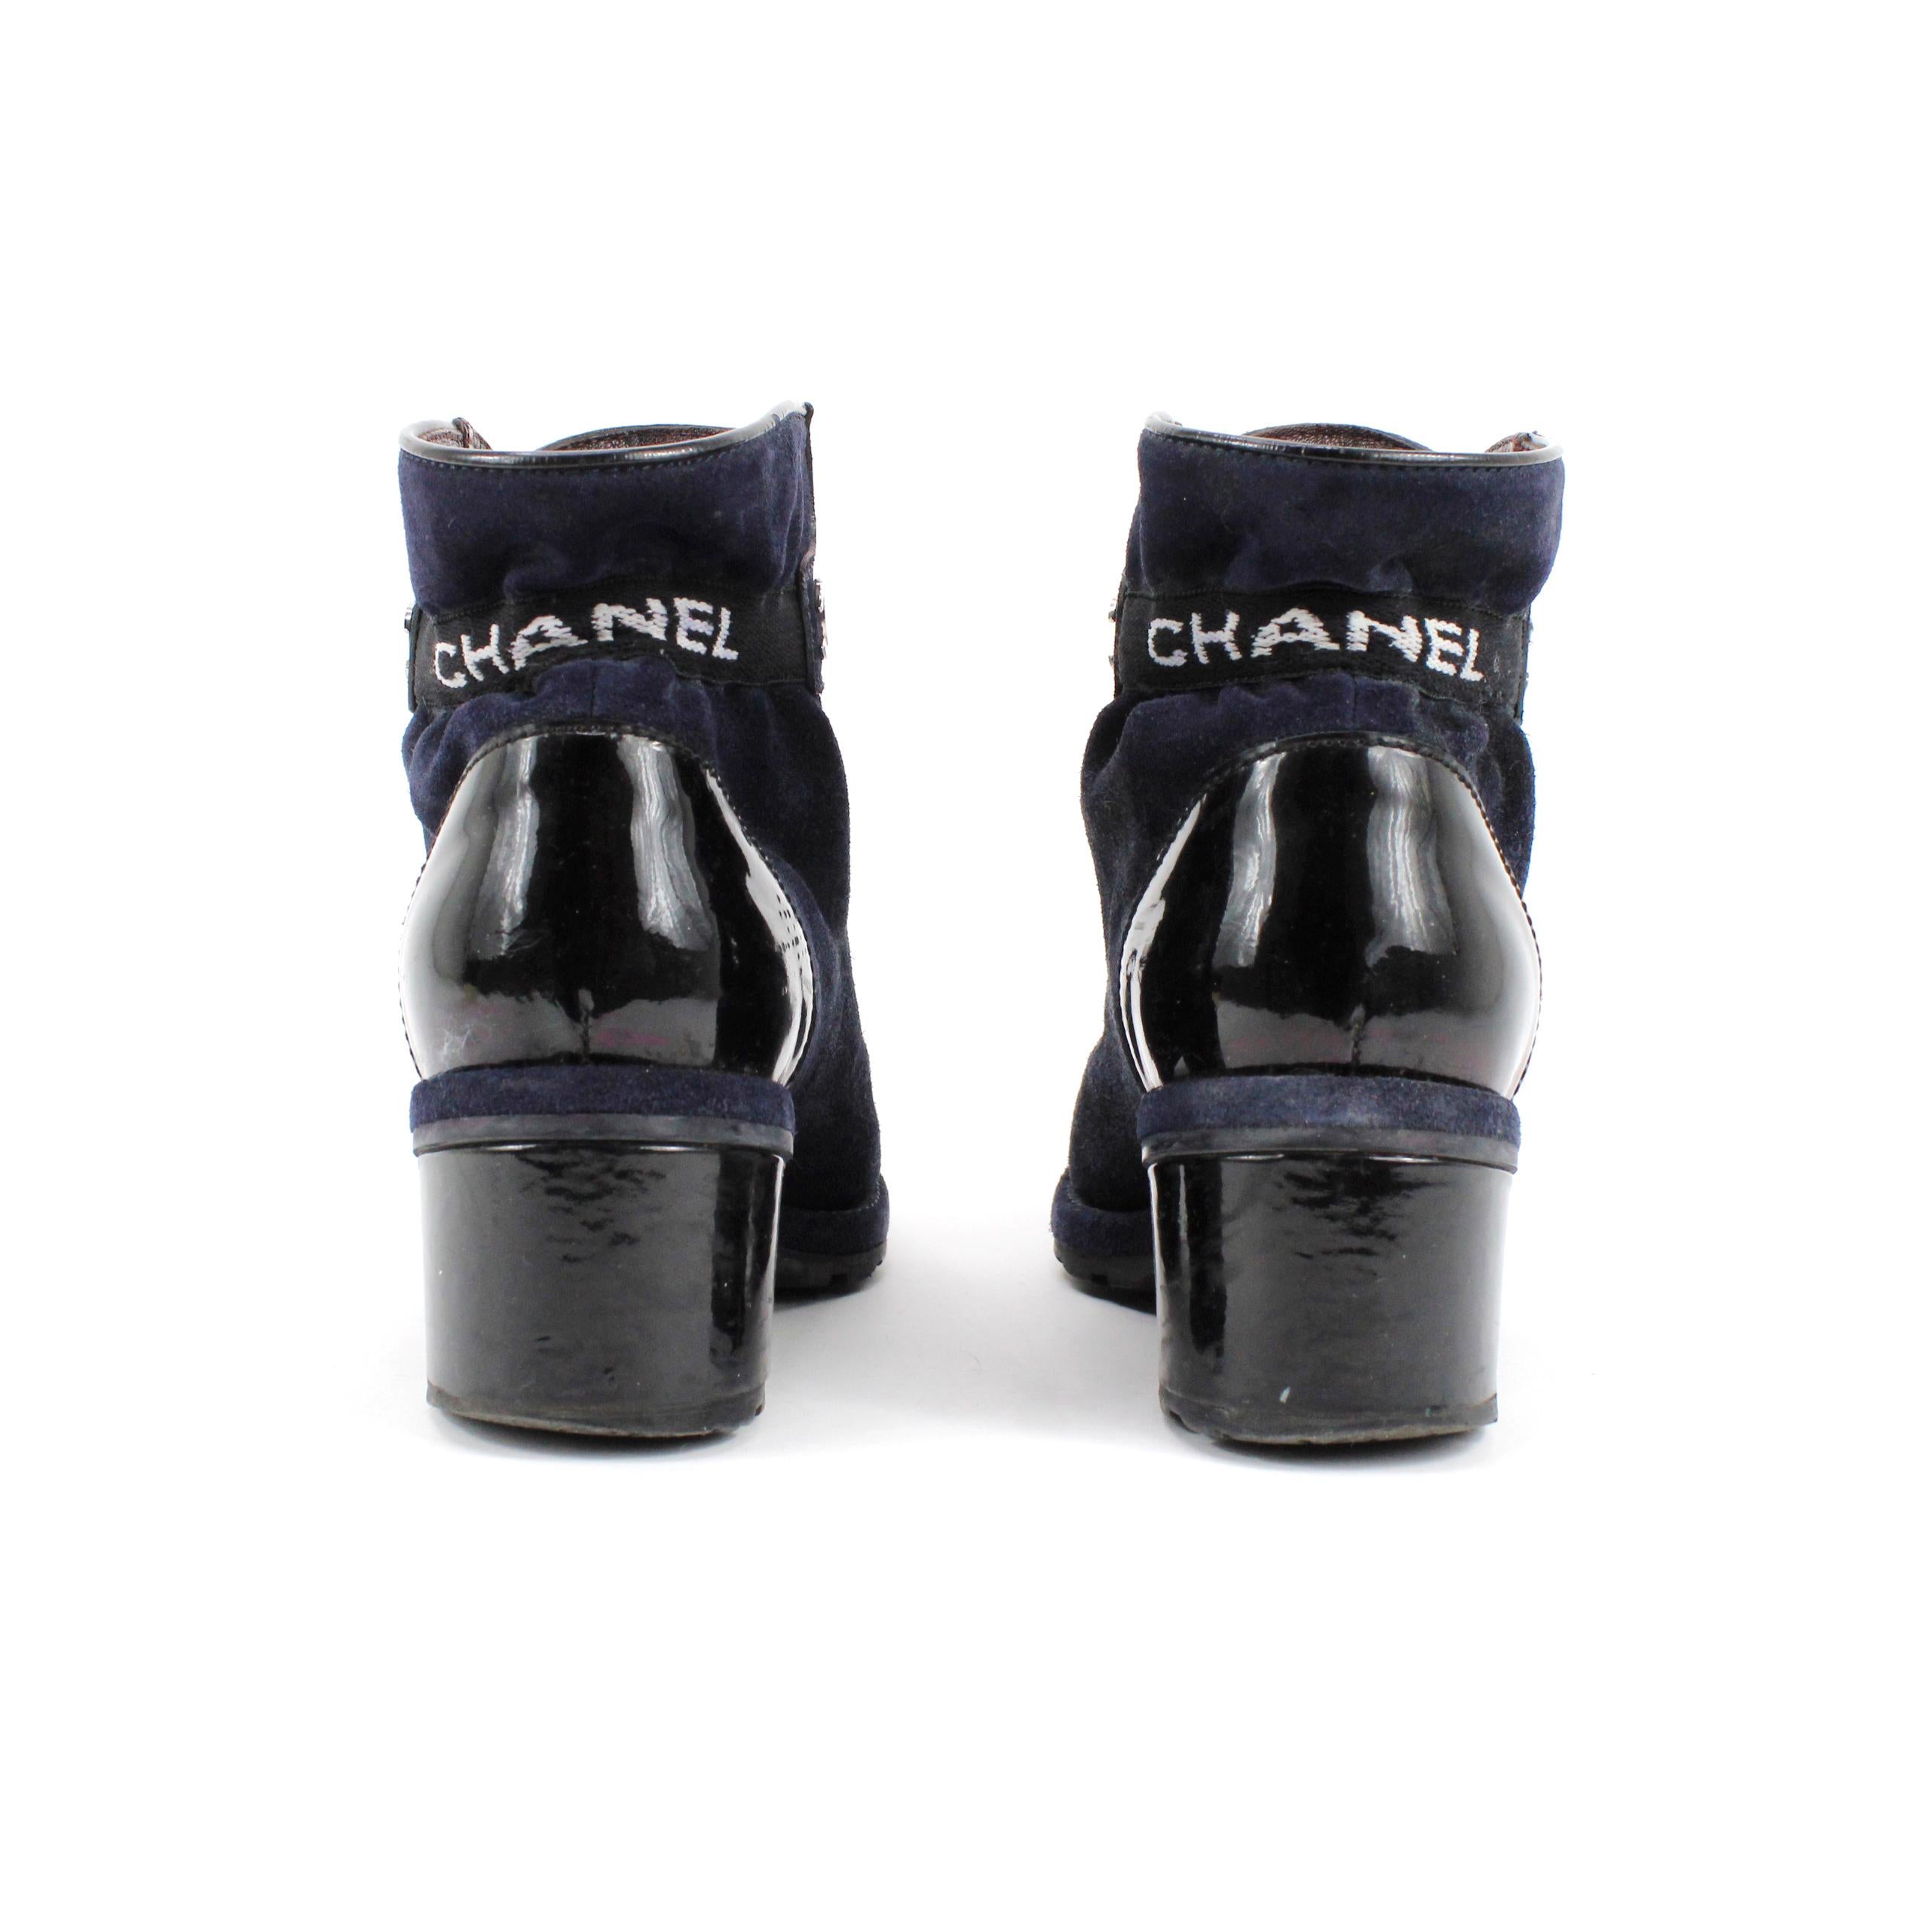 Chanel Stiefel aus Veloursleder + Lackleder, Farbe blau und schwarz. Größe 37,5 EU.

Bedingung: 
Wirklich gut, leichte Kratzer auf dem Lackleder.